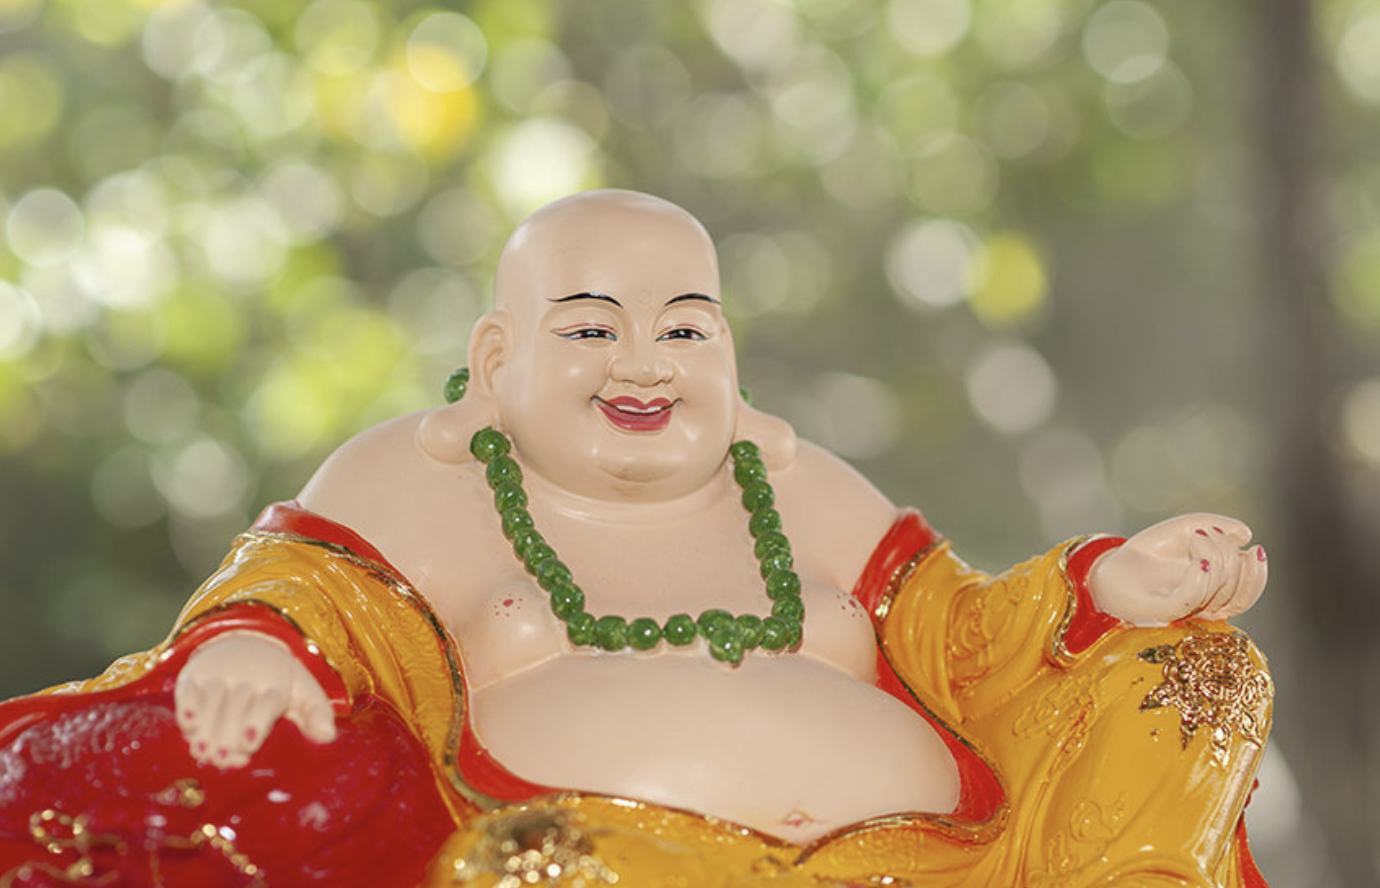 Hình ảnh Phật Di Lặc cười rất đẹp